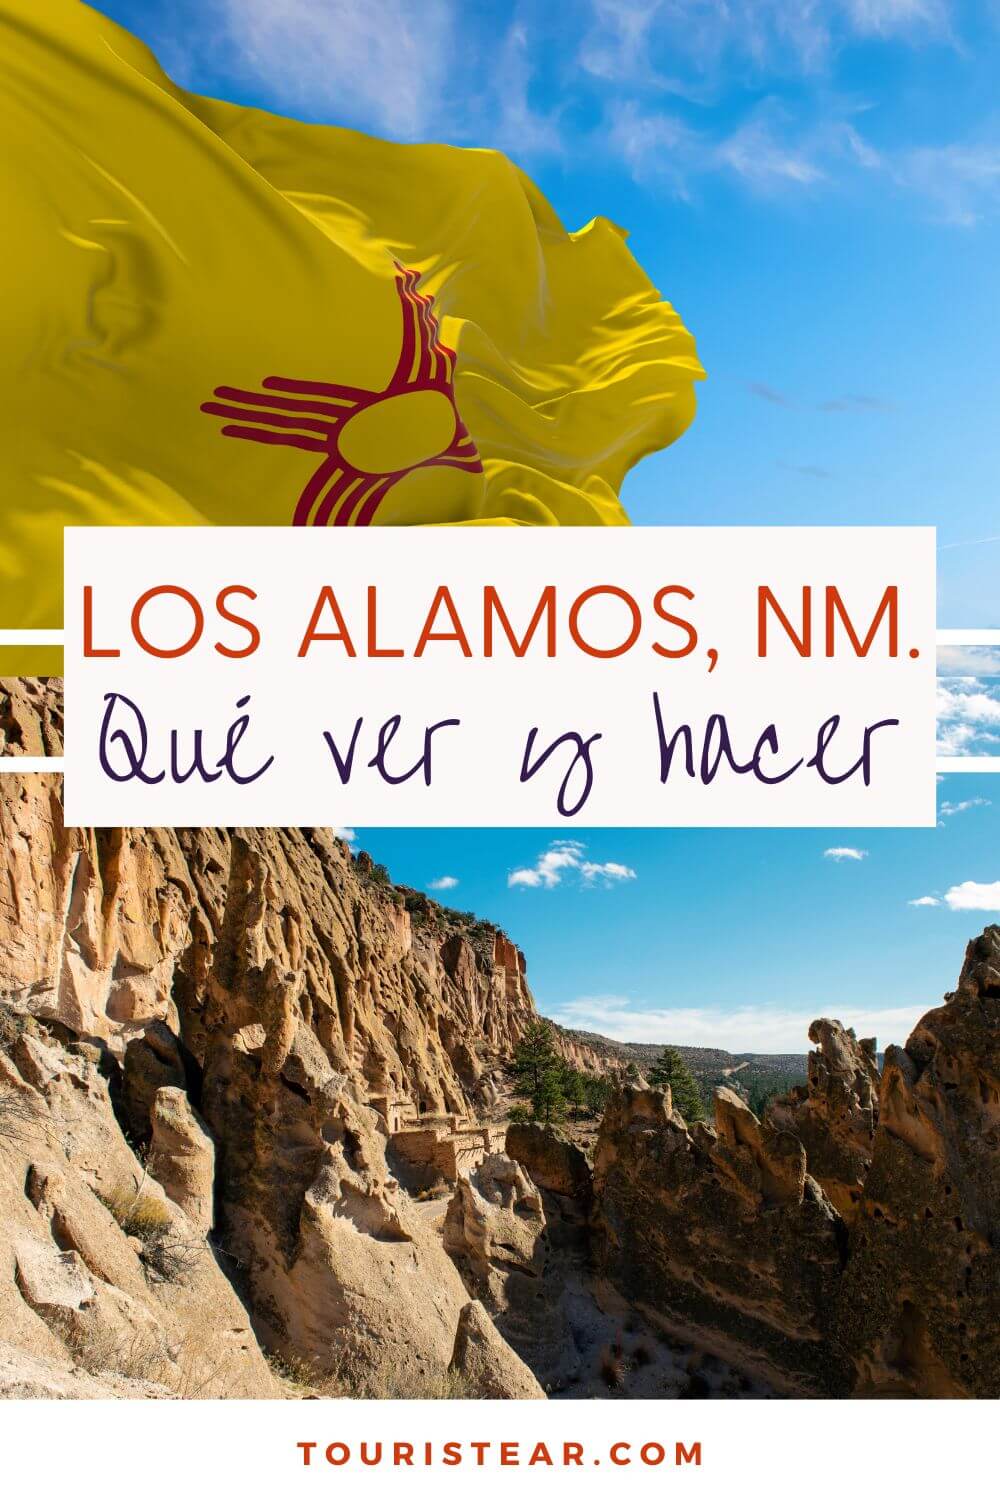 Los Alamos, NM.-